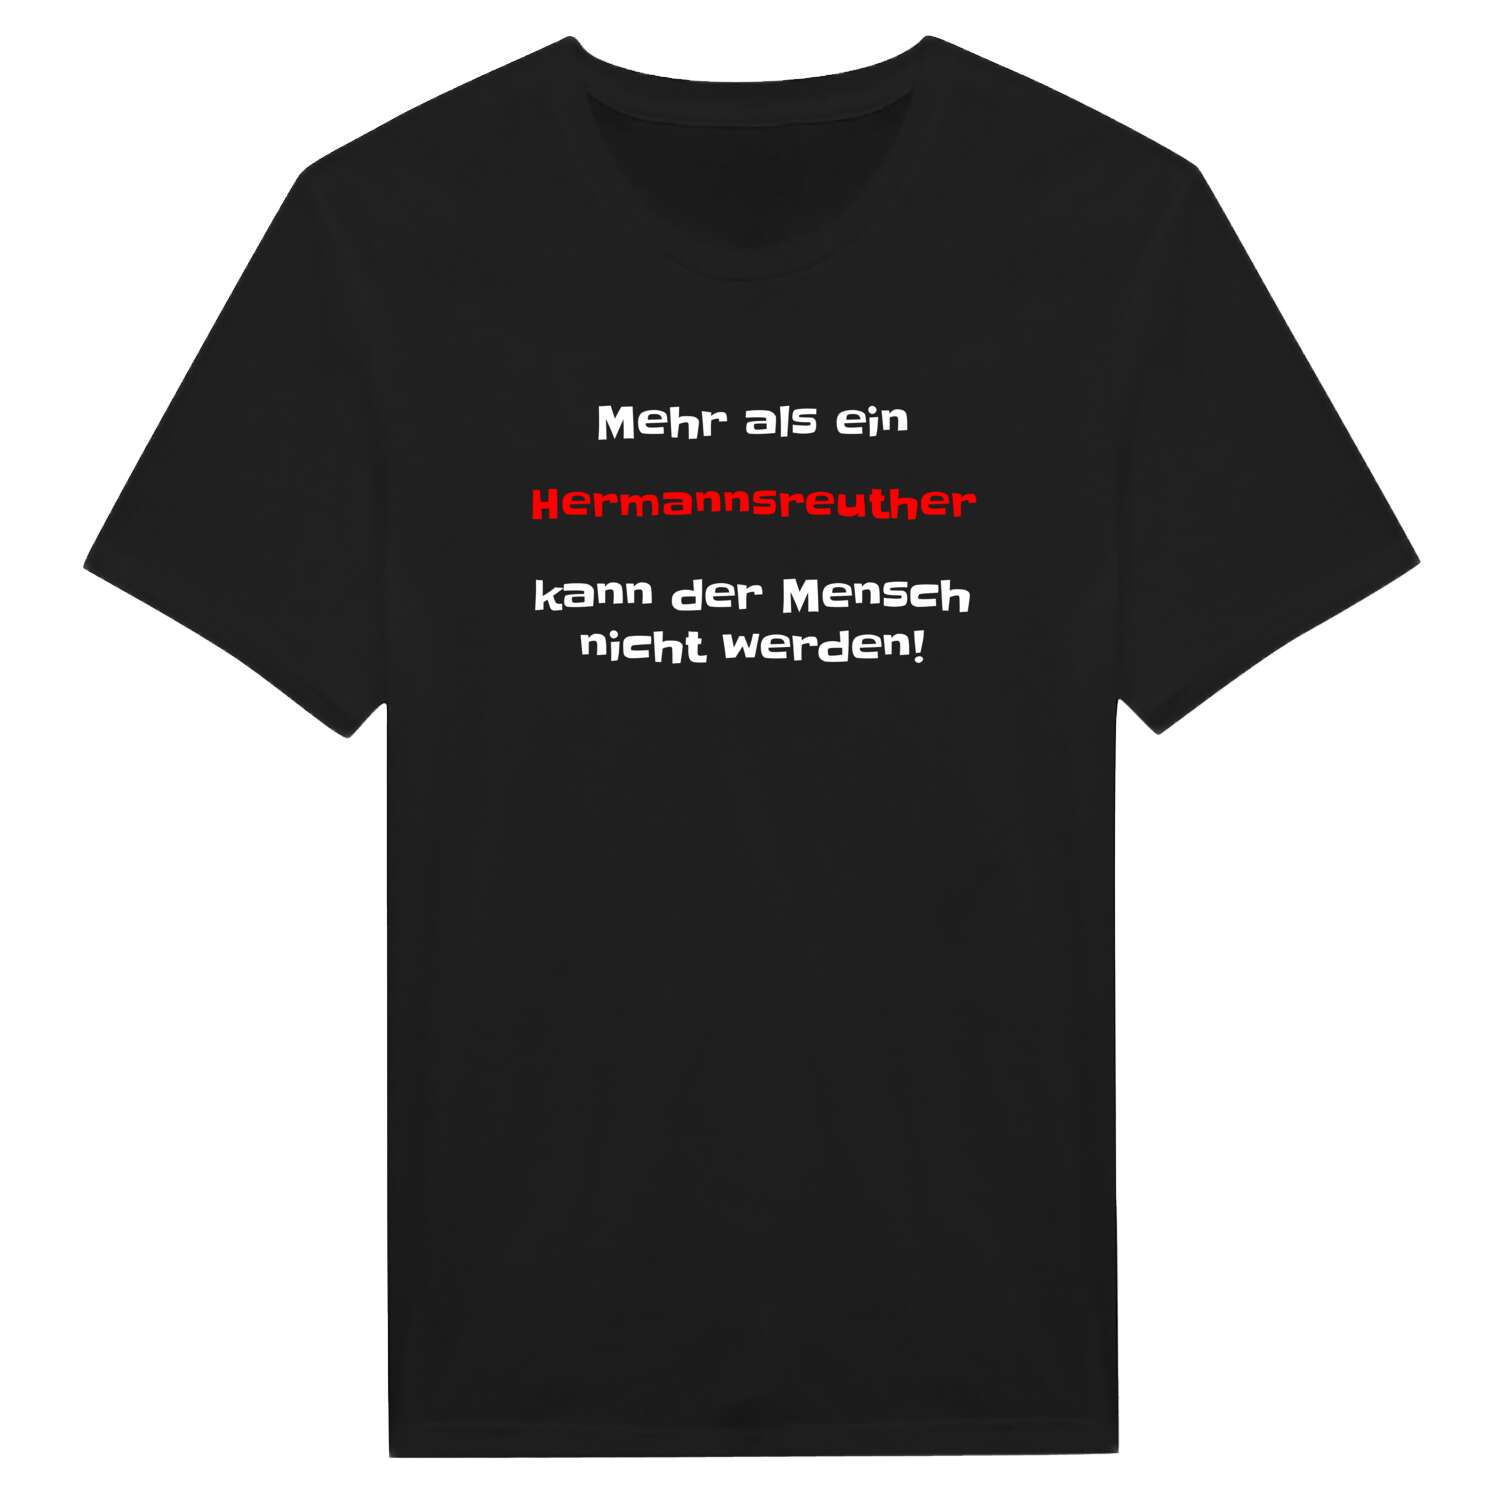 Hermannsreuth T-Shirt »Mehr als ein«